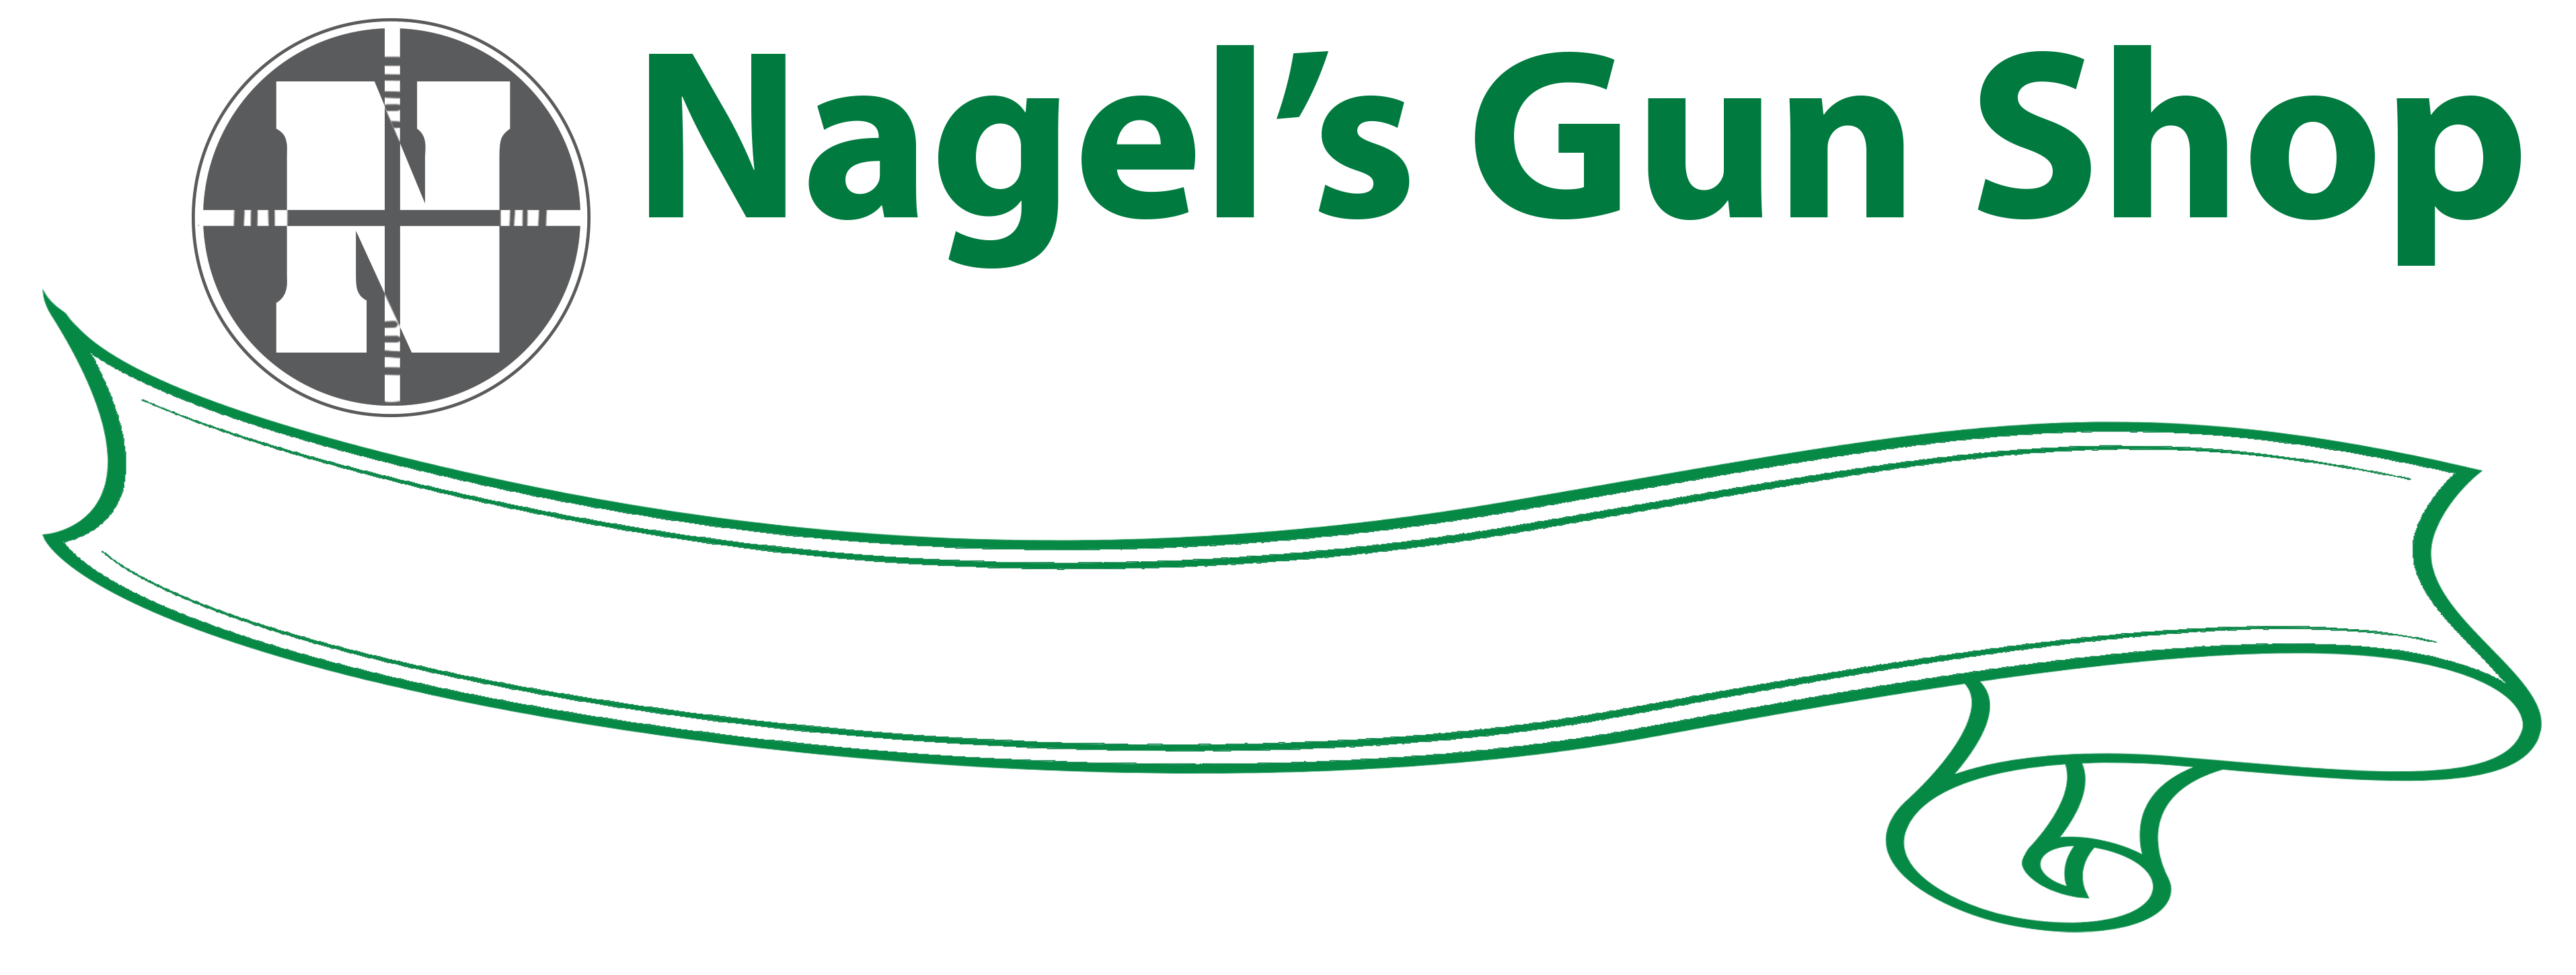 Nagel's Gun Shop | Since 1942